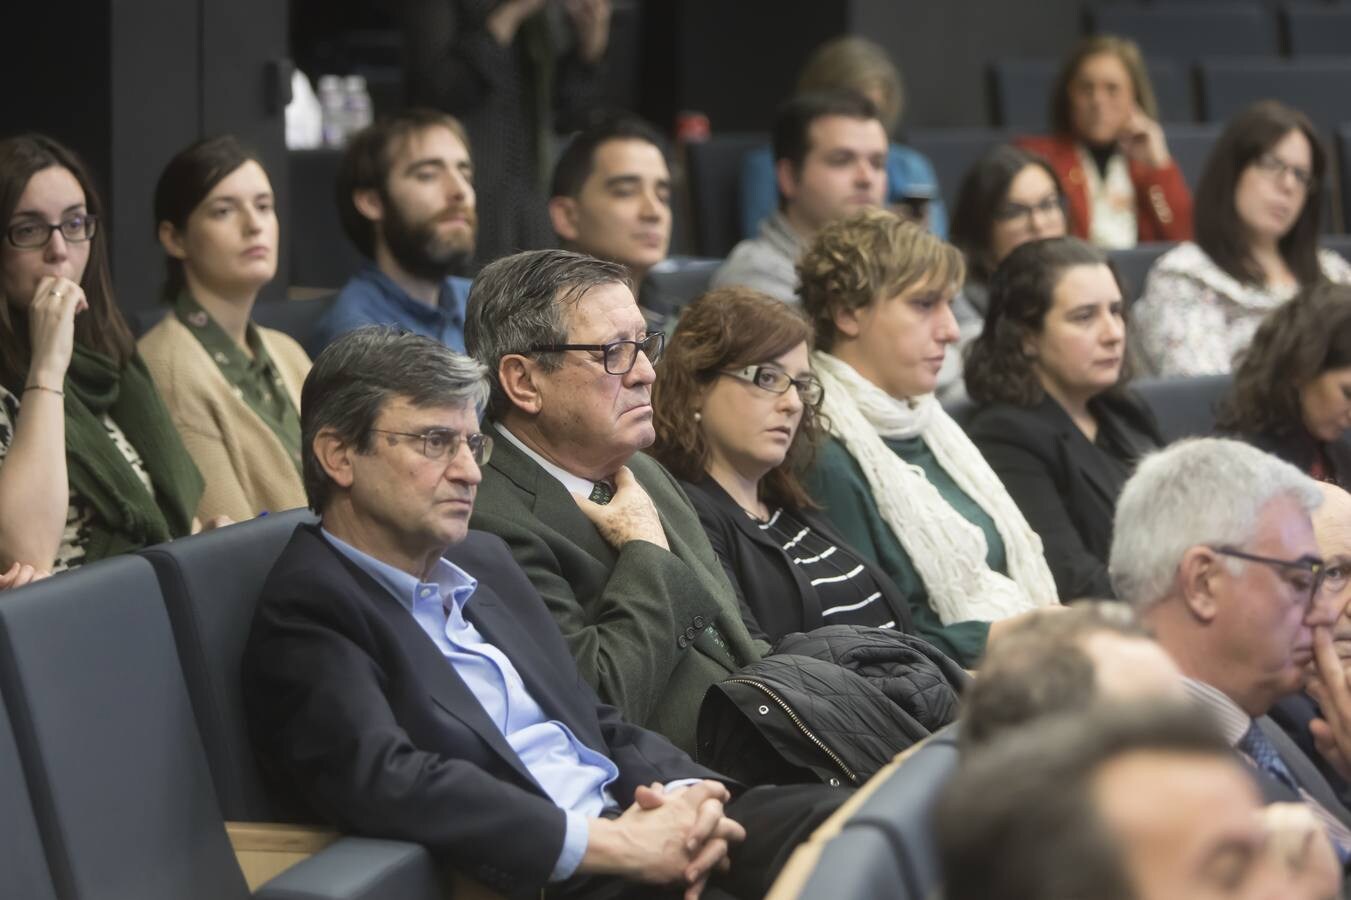 Coloquio sobre la situación actual de la universidad española y sus retos, organizado en Logroño por la Universidad Internacional de La Rioja (UNIR).